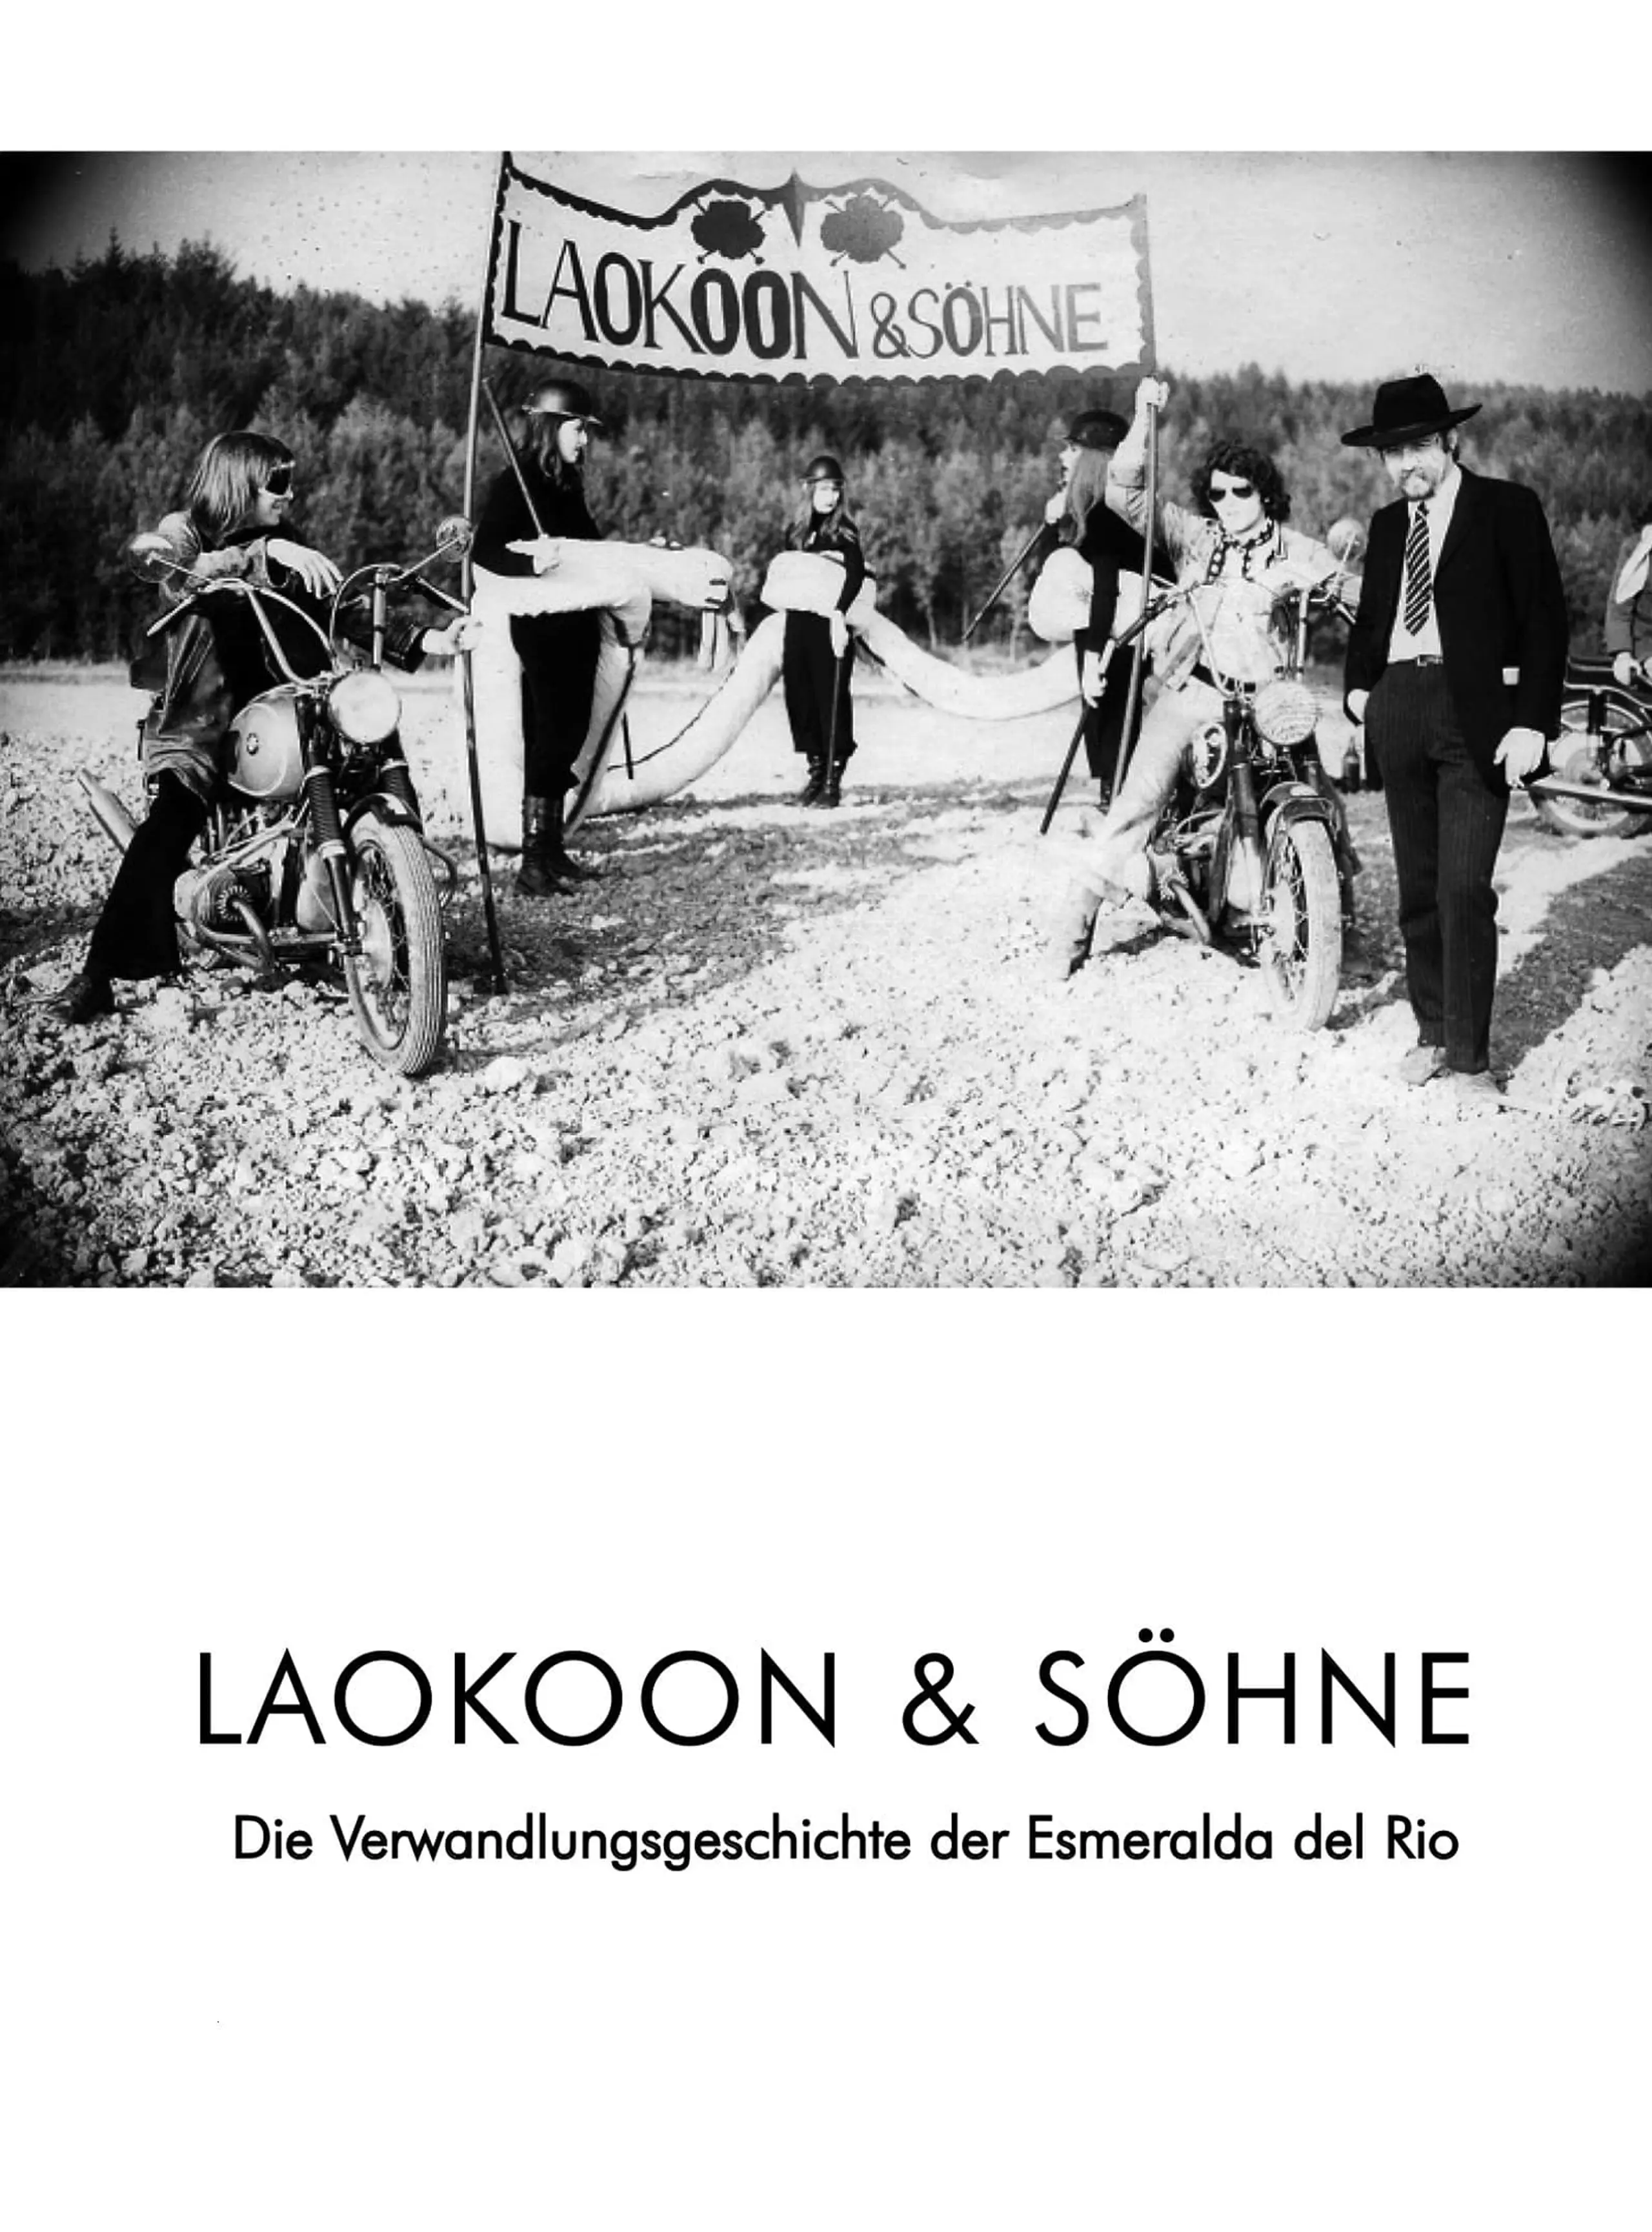 Laokoon & Söhne